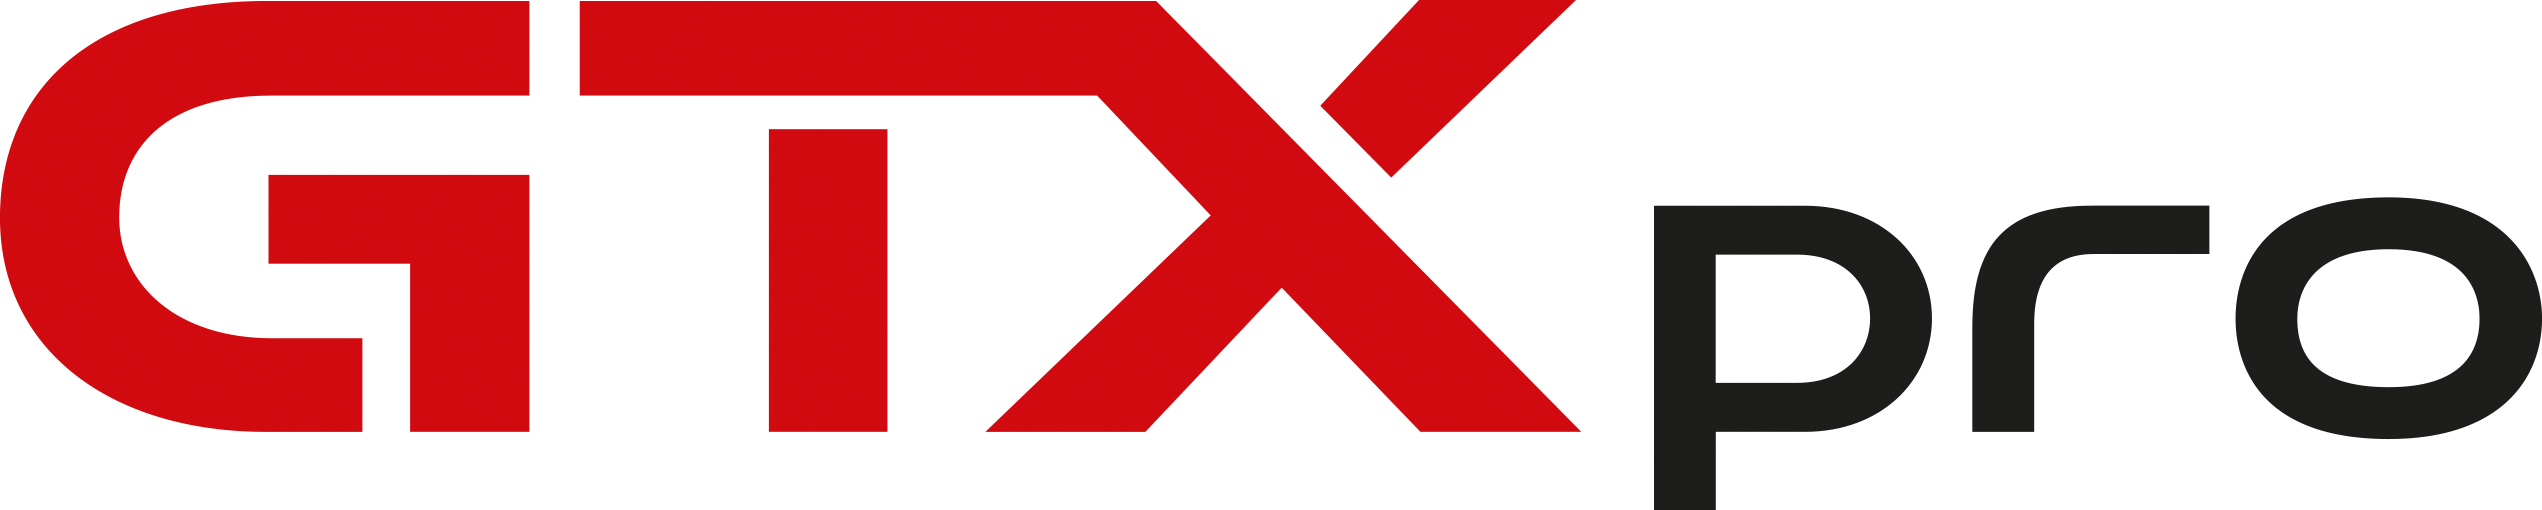 GTXpro Logo for light background